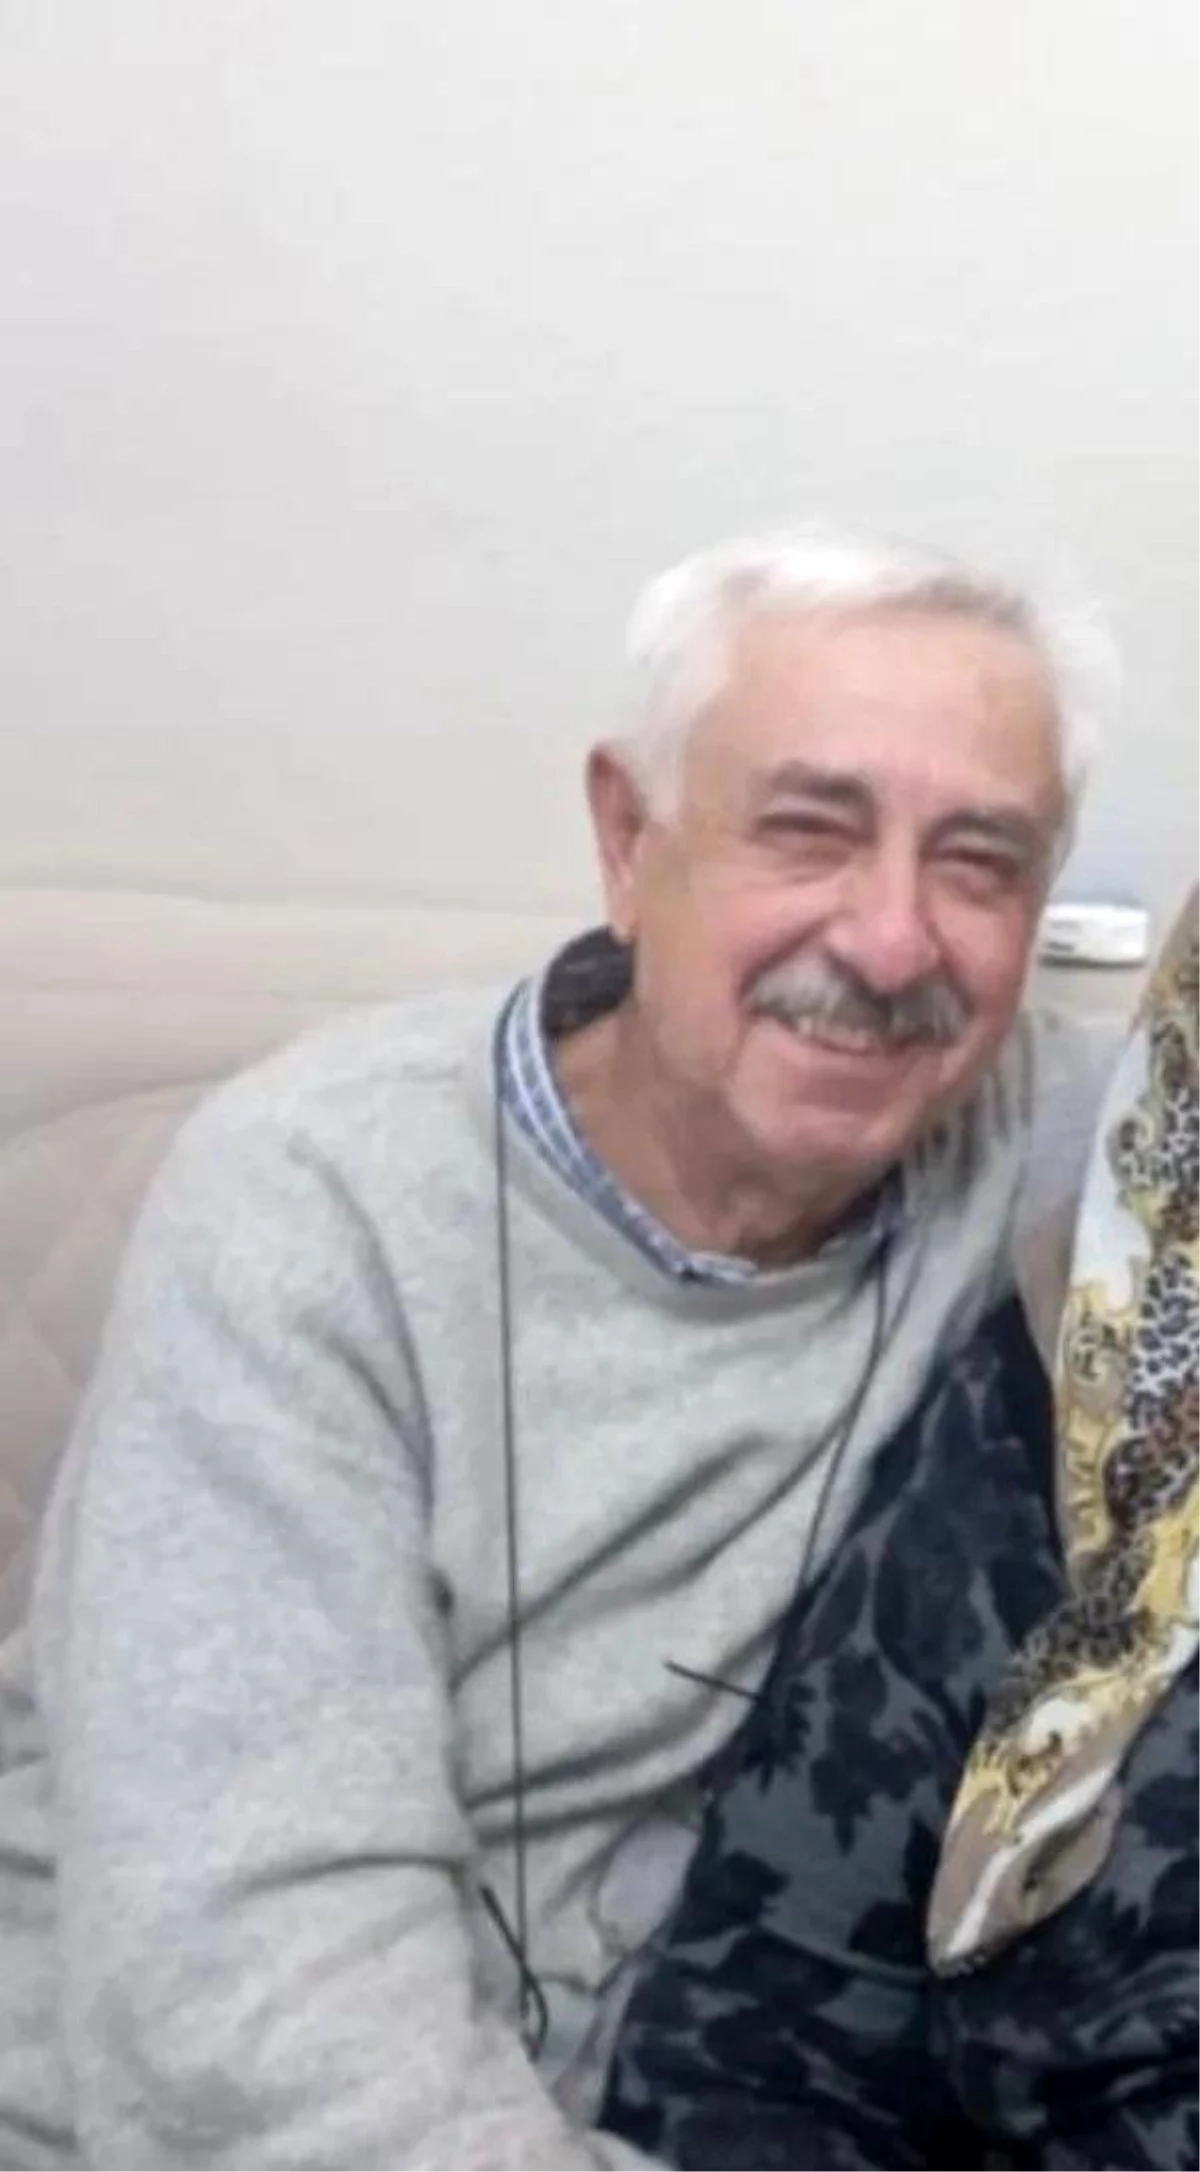 Kastamonu’da 75 yaşındaki vatandaş düşerek hayatını kaybetti